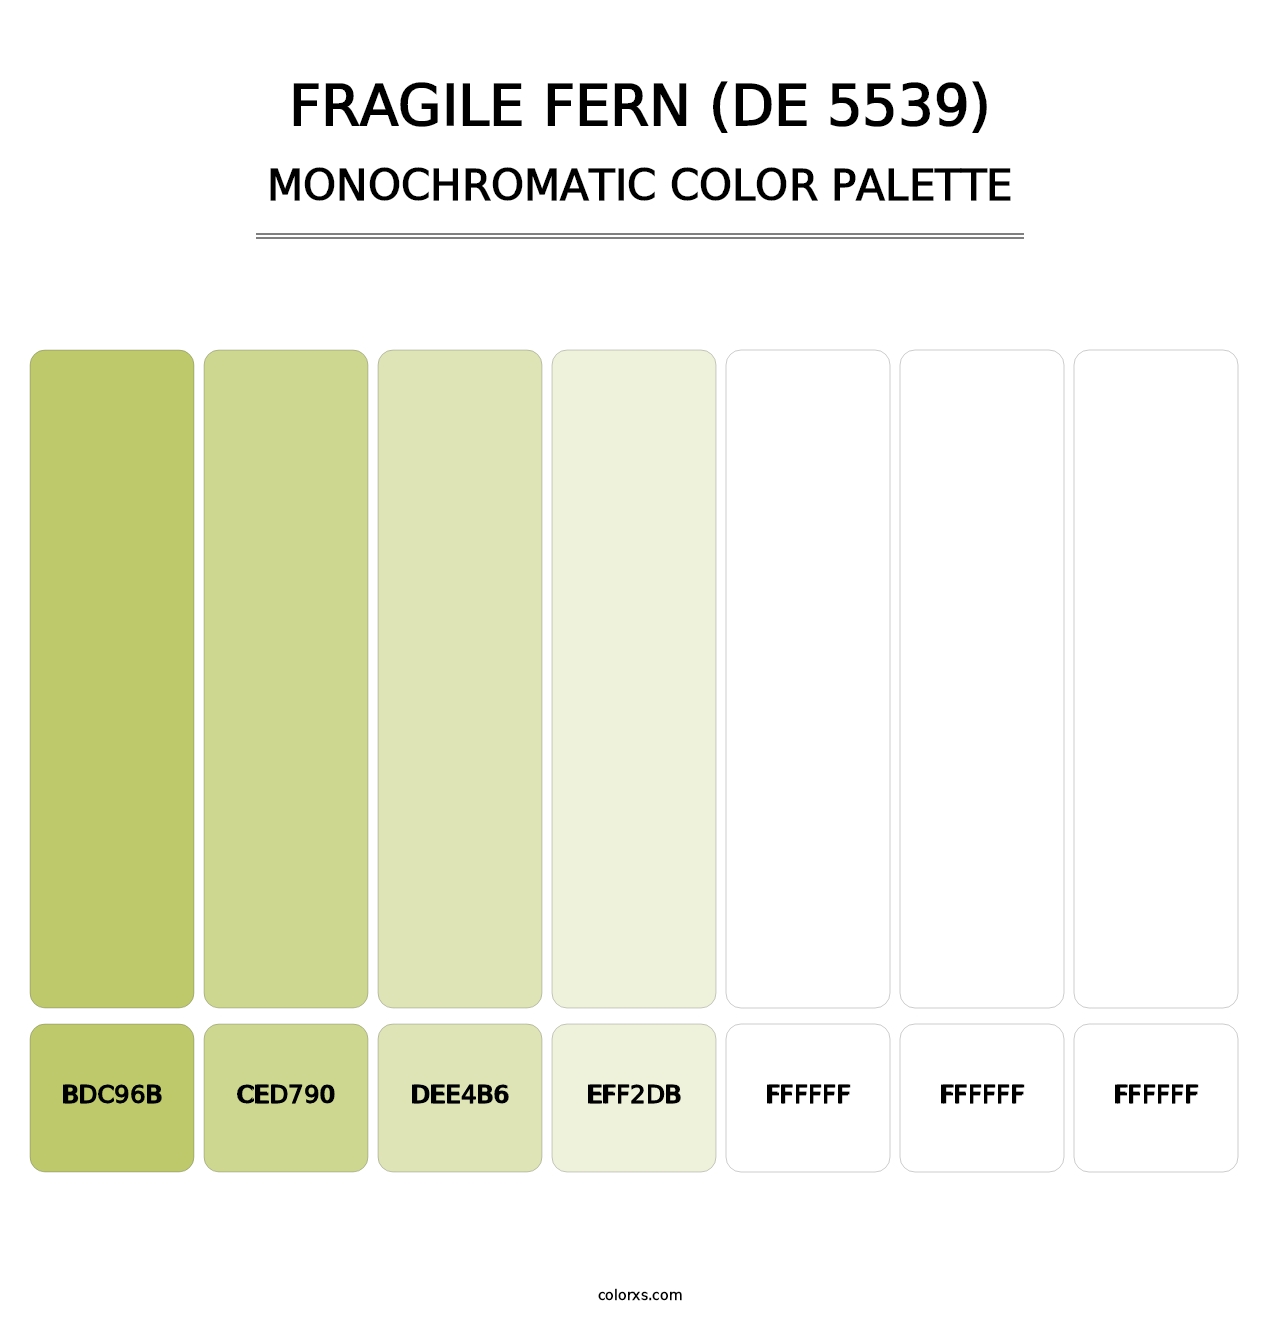 Fragile Fern (DE 5539) - Monochromatic Color Palette